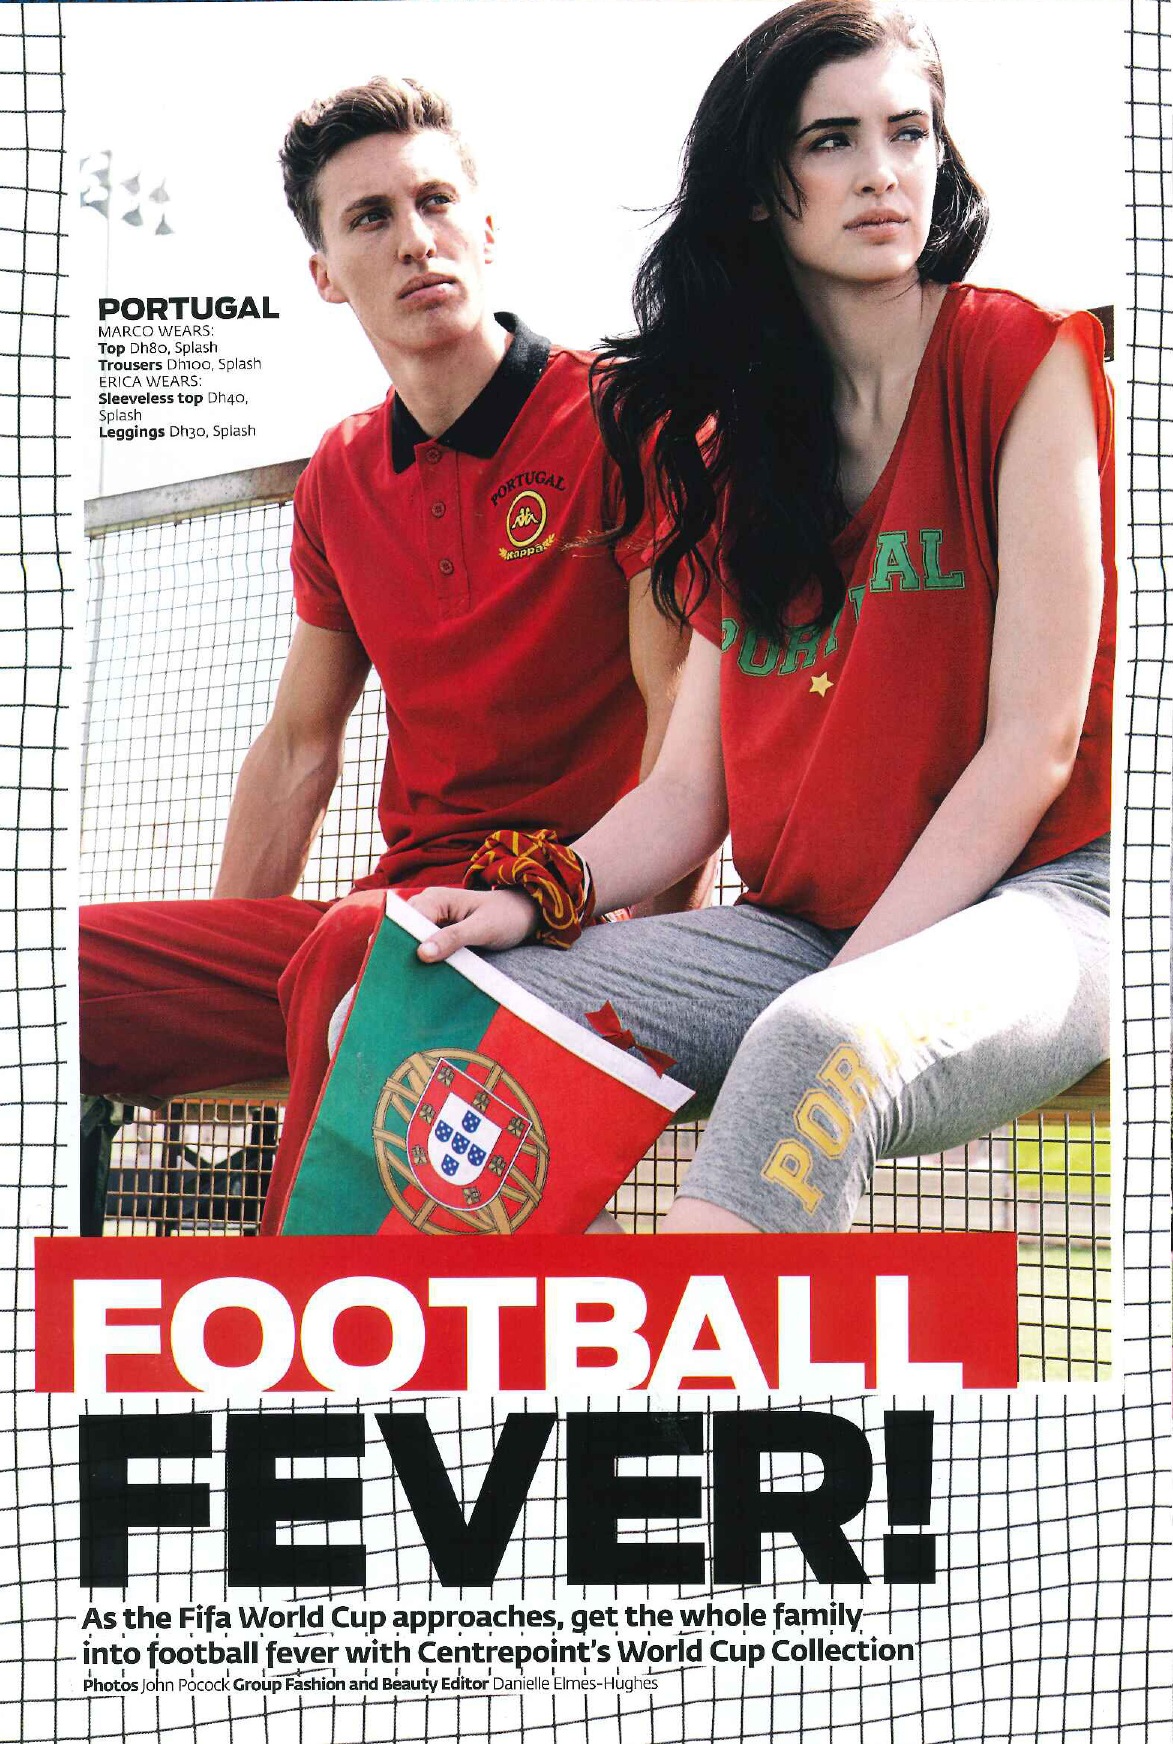 FLC Models & Talents - Catalogue Shoots - Football Fifa Feva Photoshoot Friday Magazine